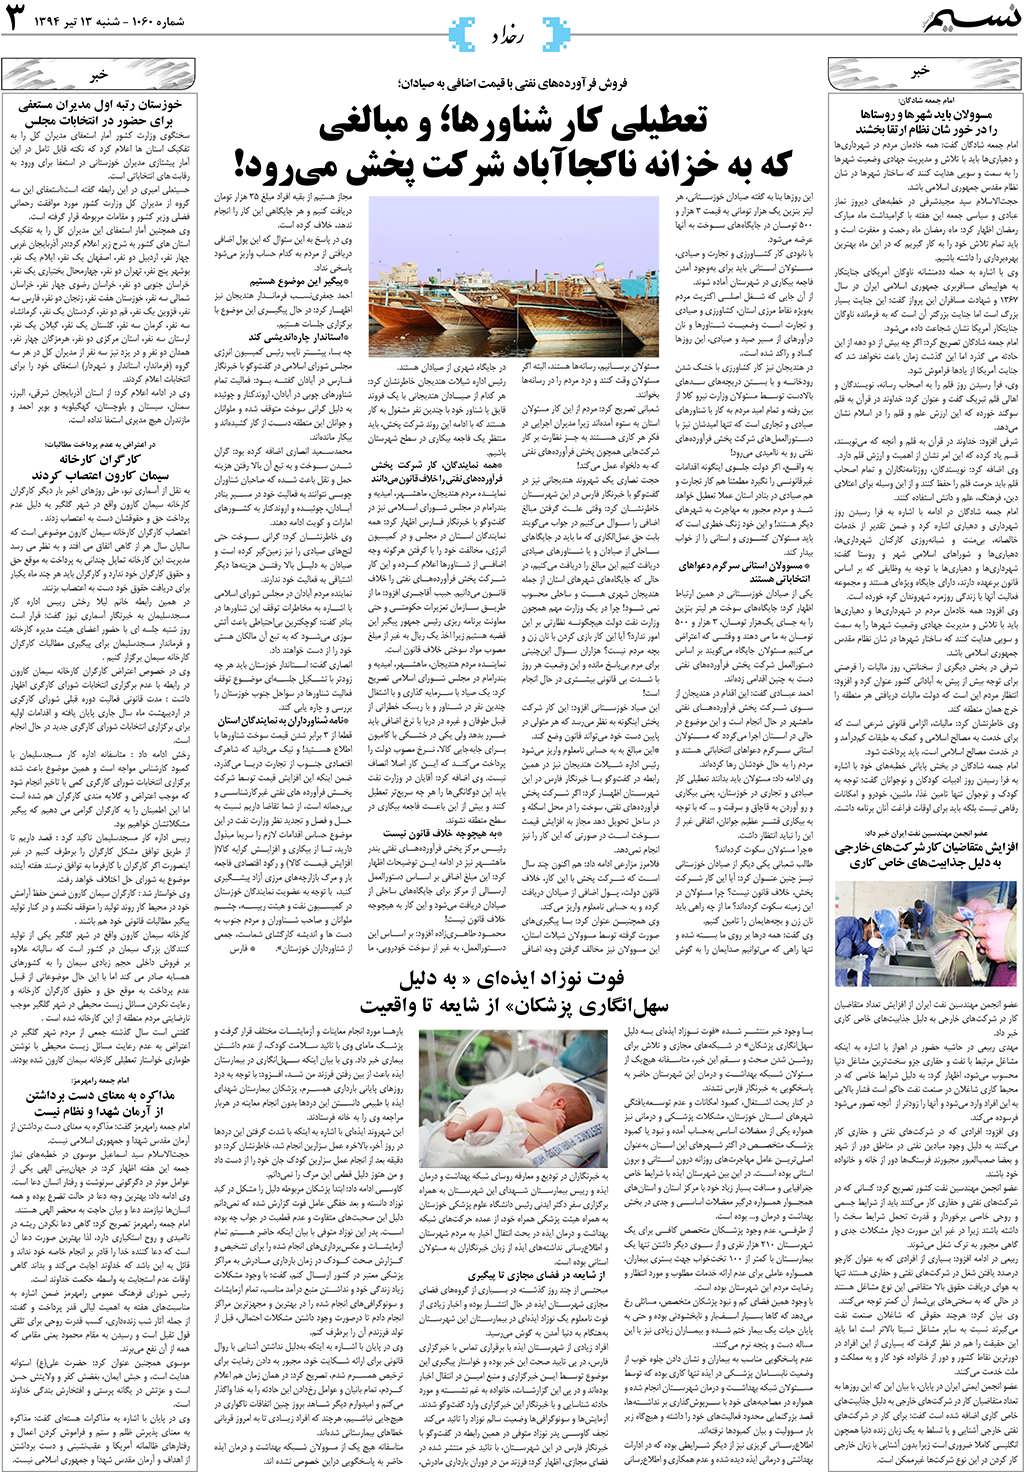 صفحه رخداد روزنامه نسیم شماره 1060